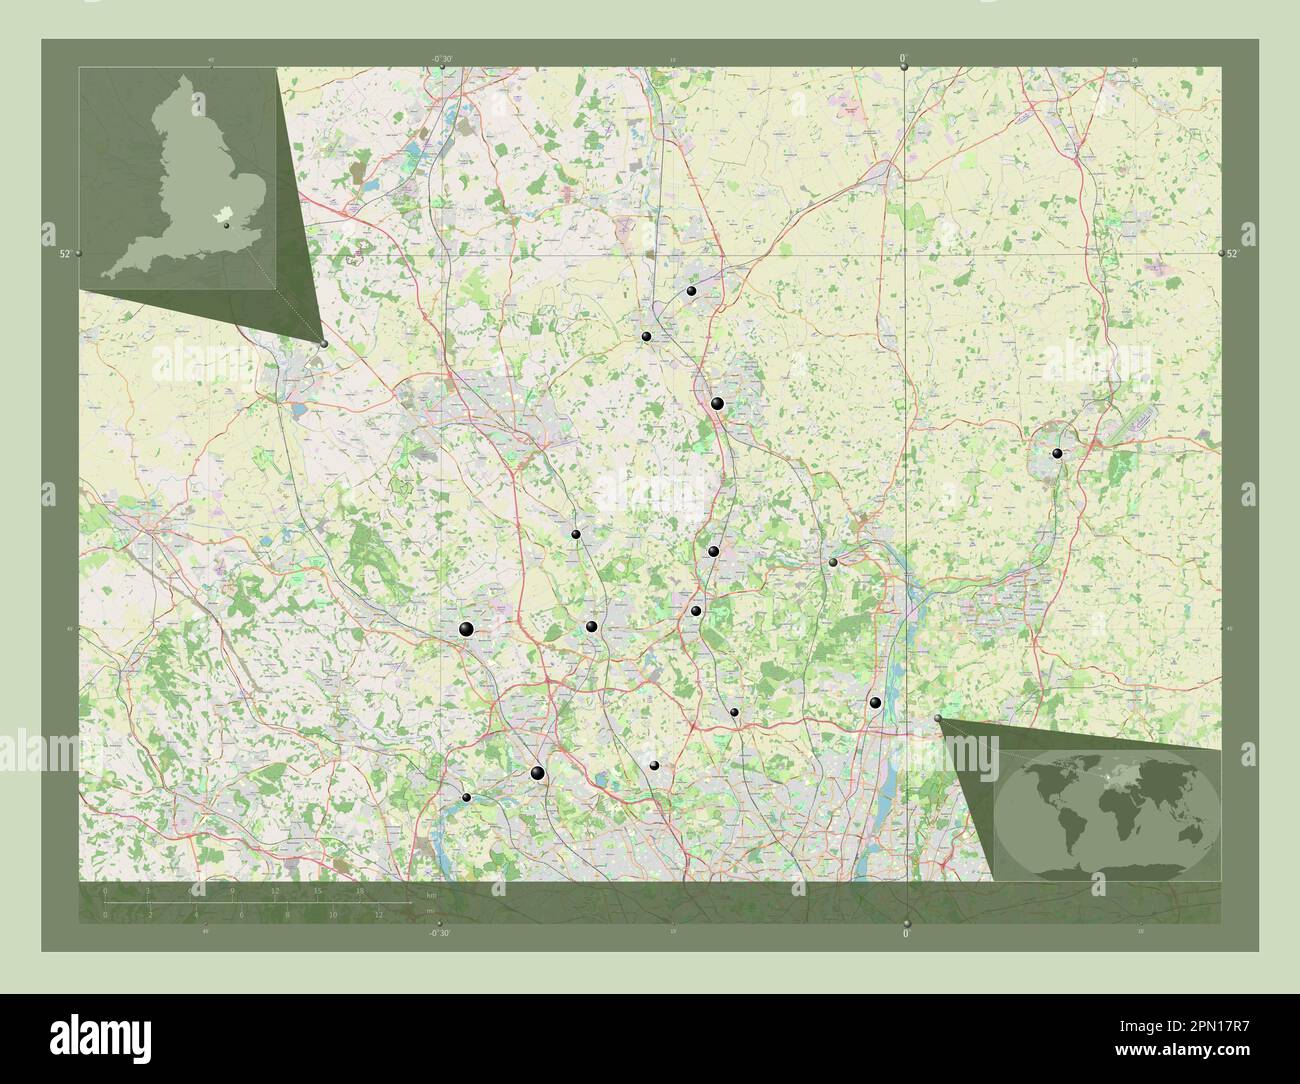 Hertfordshire, contea amministrativa dell'Inghilterra - Gran Bretagna. Aprire la mappa stradale. Posizioni delle principali città della regione. Posizione ausiliaria ad angolo m Foto Stock